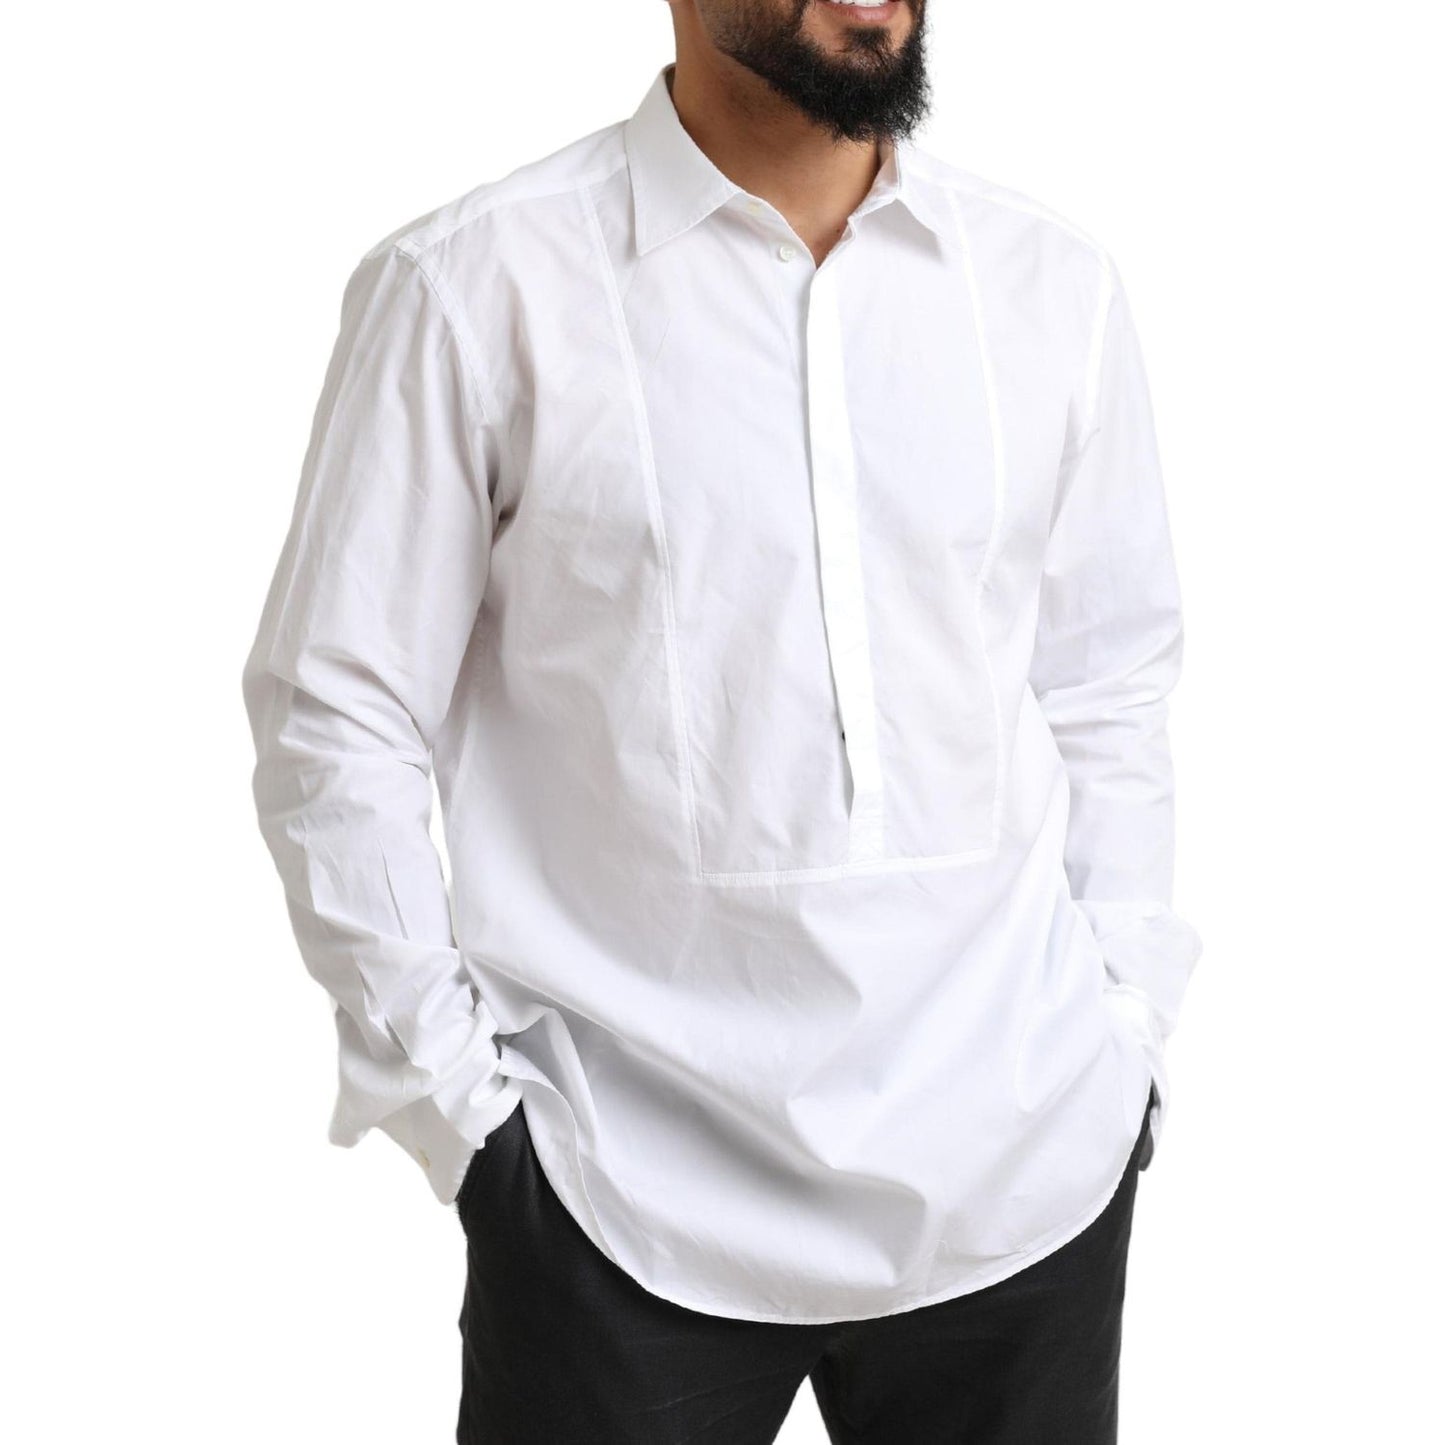 Dolce & Gabbana Elegant White Cotton Dress Shirt white-formal-cotton-tuxedo-men-dress-shirt